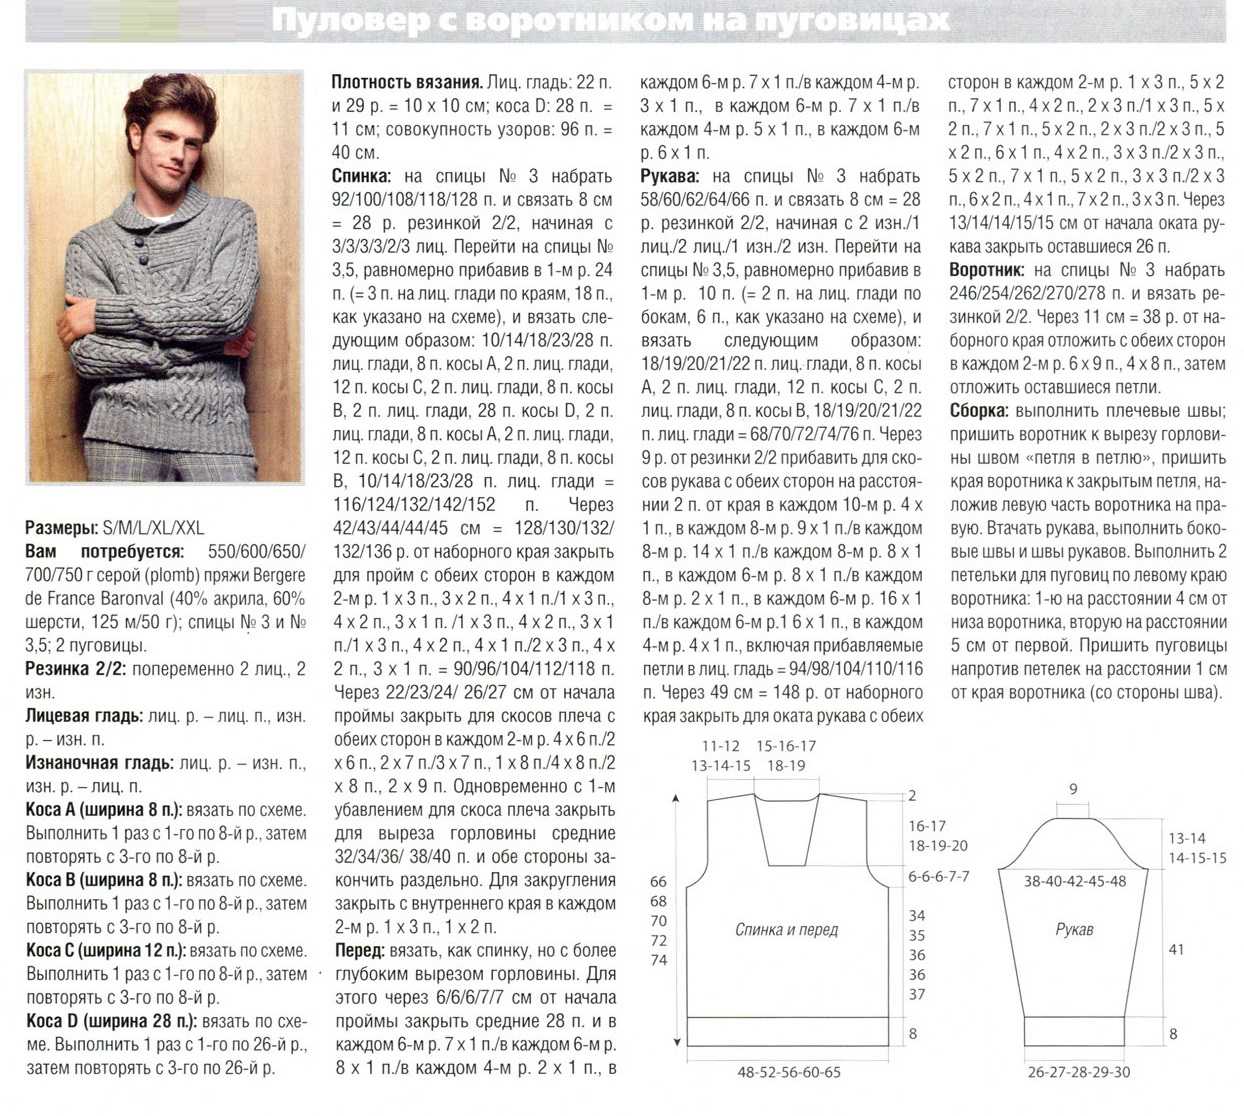 Вязание спицами для мужчин: модные модели 2019 года с описанием
вязание спицами для мужчин: модные модели 2019 года — modnayadama